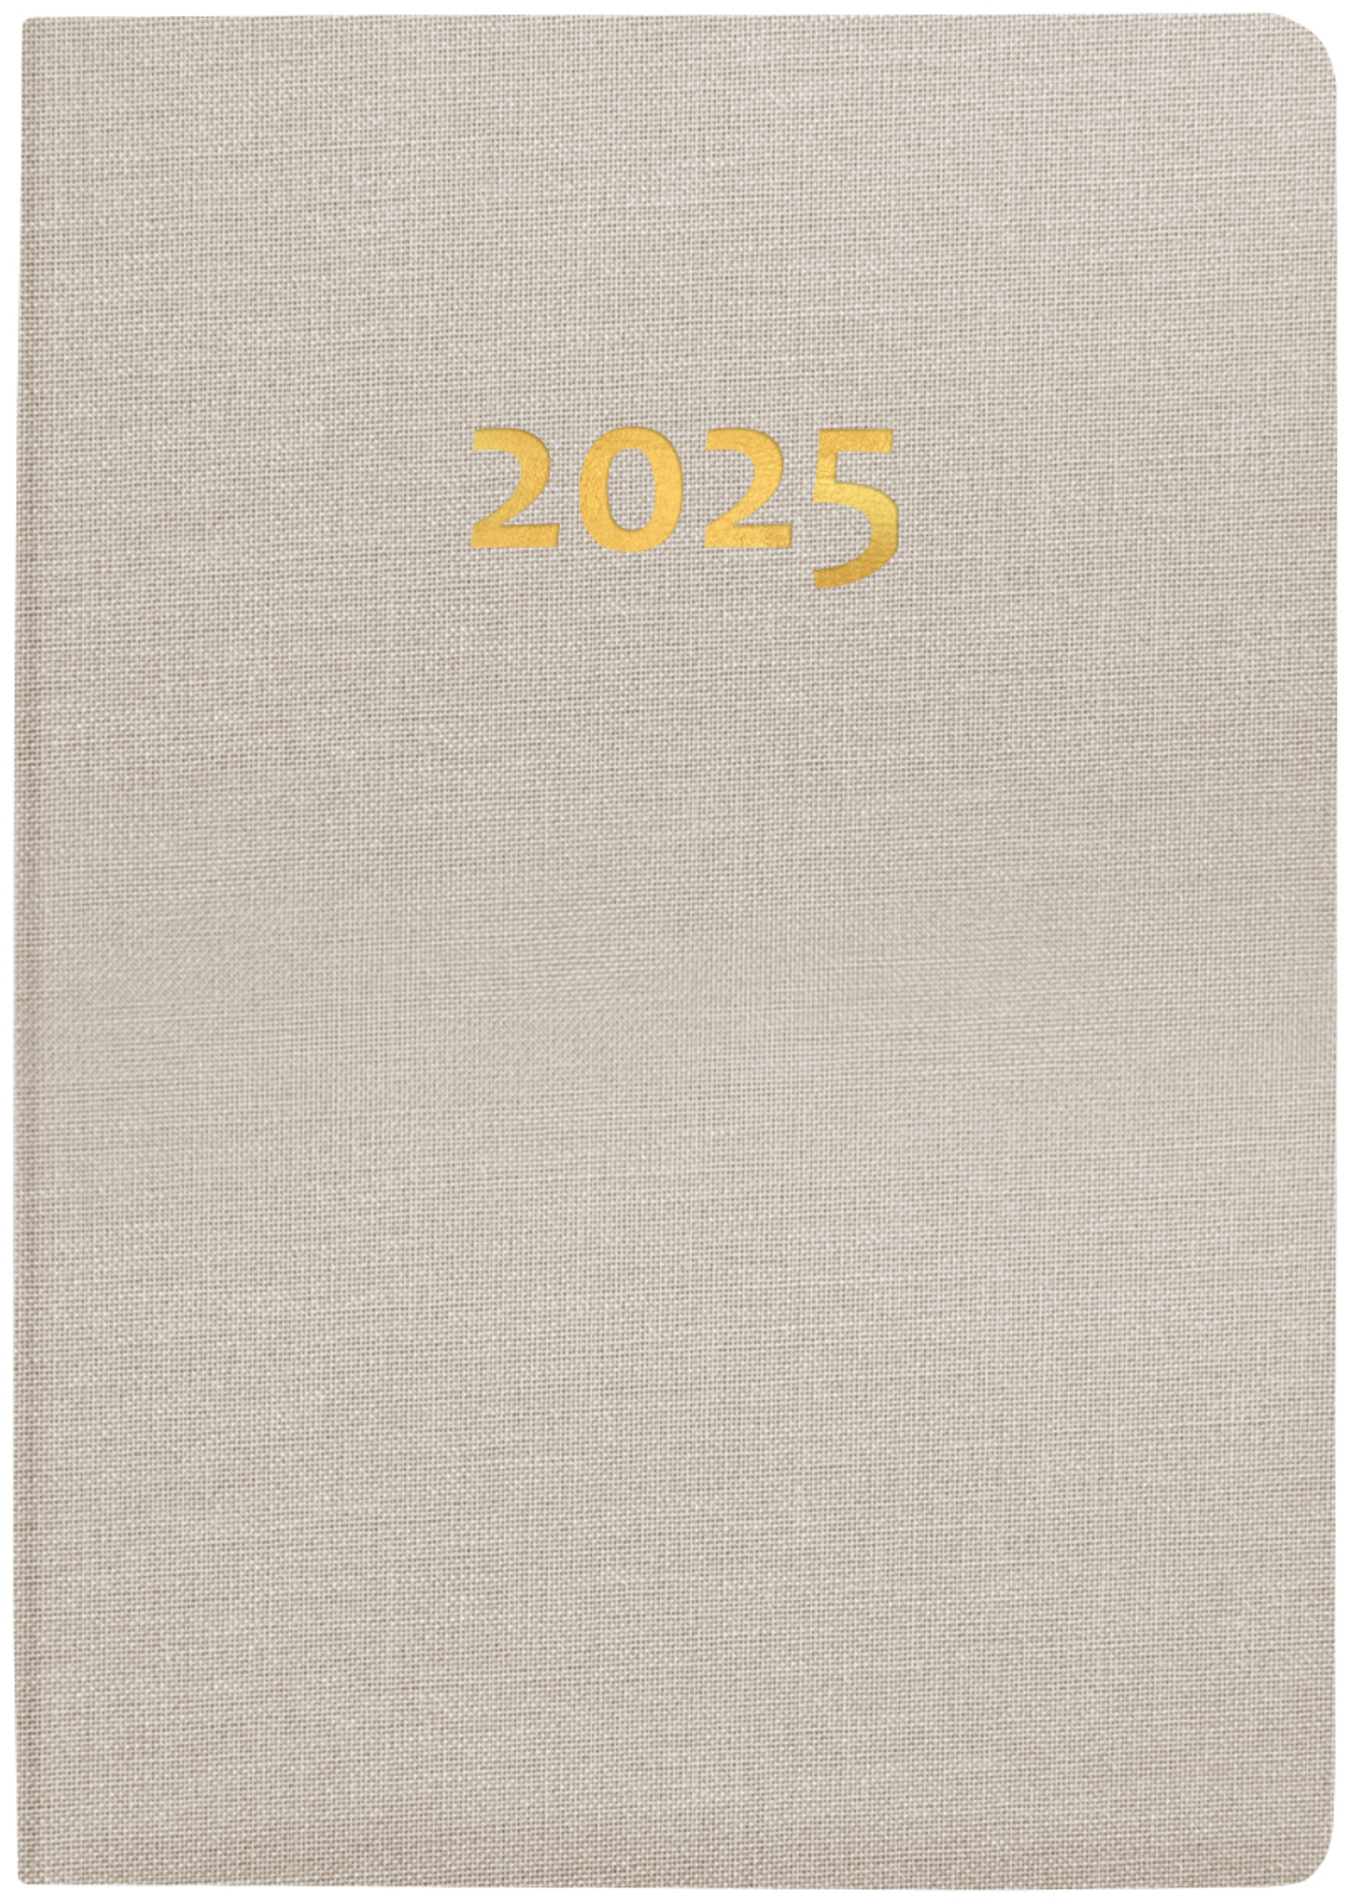 BIELLA Agenda Tell 2025 823201100025 2J/1P beige ML 8.5x12.5cm